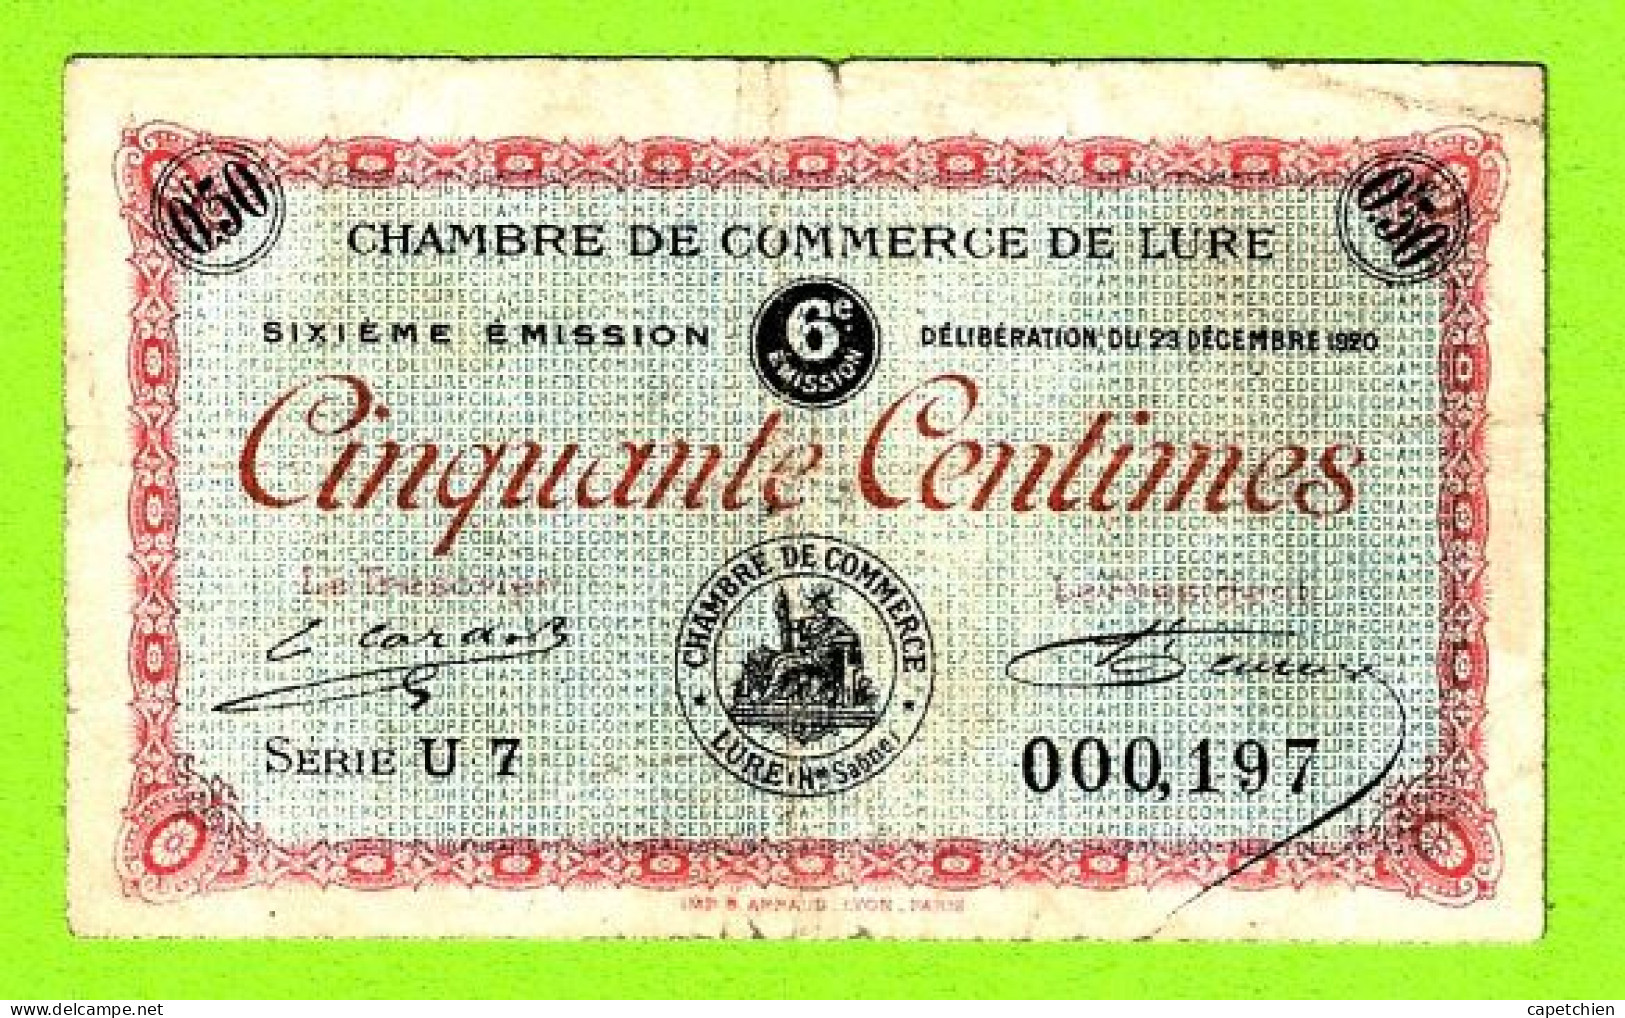 FRANCE / LURE / 50 CENTIMES / 29 DECEMBRE 1920 / N° 000197 / SERIE U7 / 6eme EMISSION - Cámara De Comercio